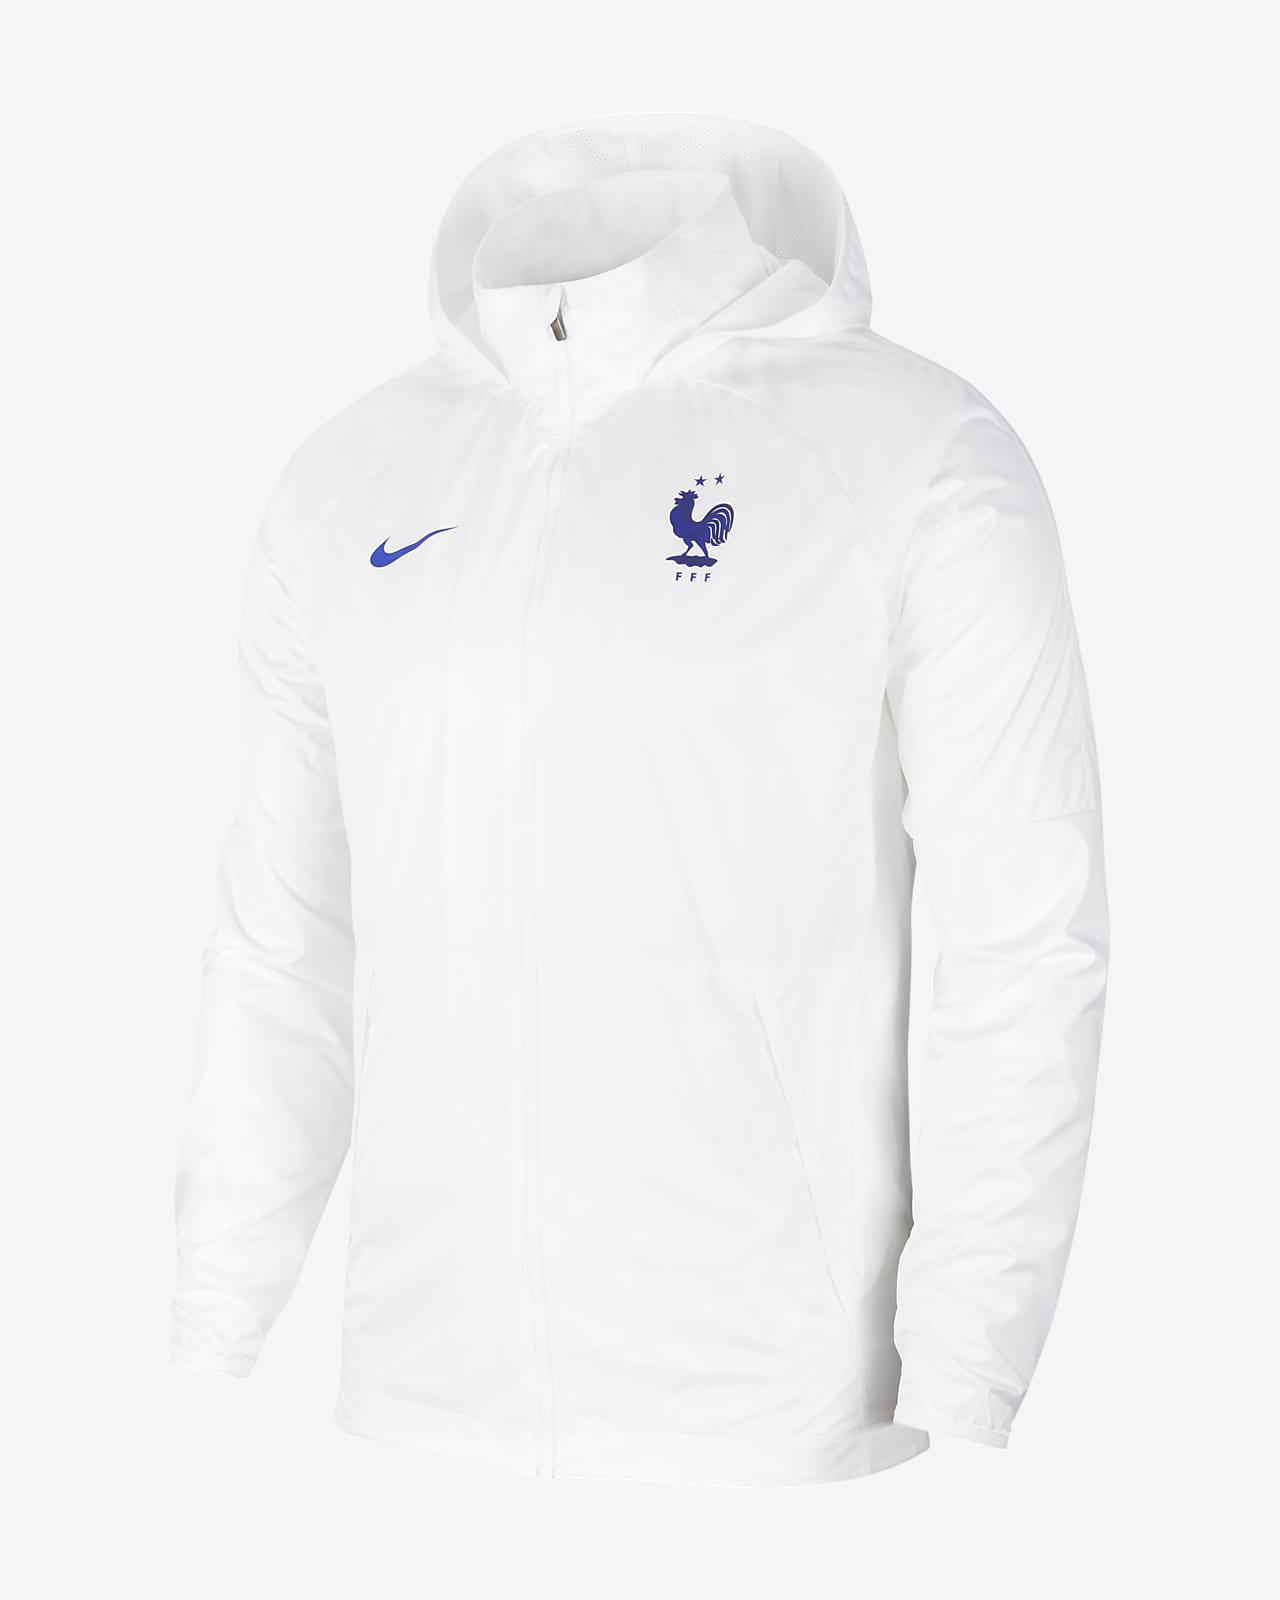 FFF Men's Football Jacket. Nike LU